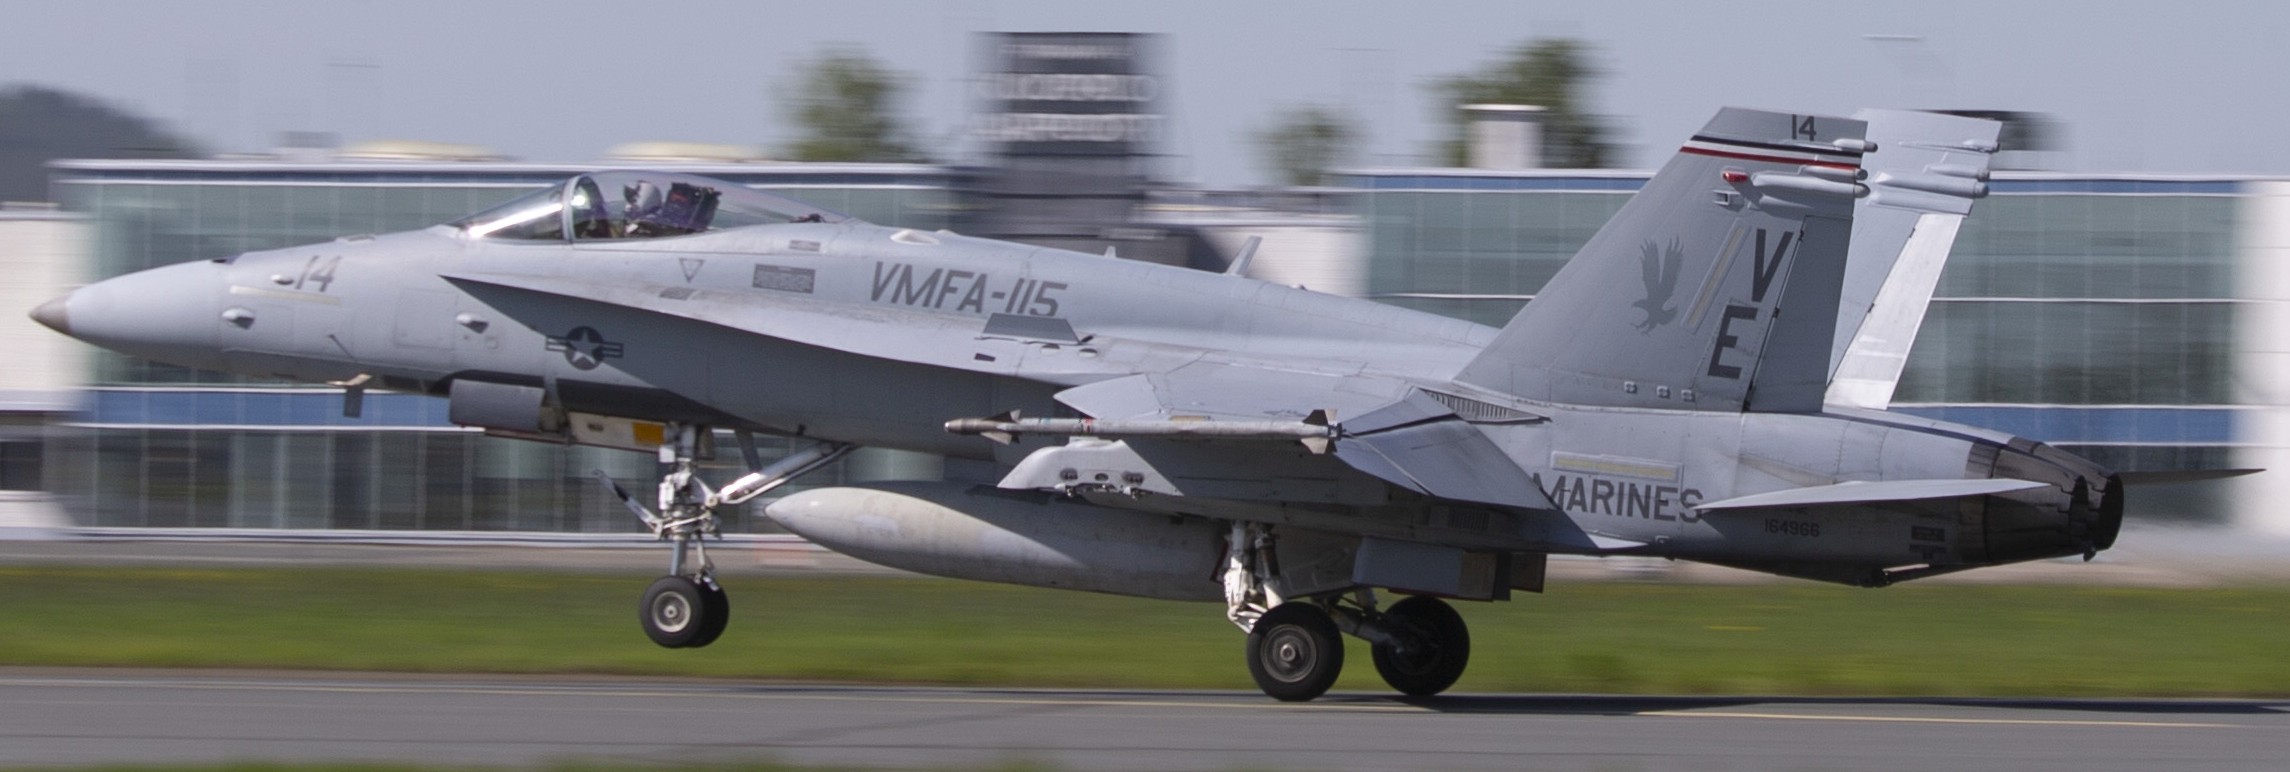 vmfa-115 silver eagles marine fighter attack squadron usmc f/a-18c hornet 205 rissala air base finland